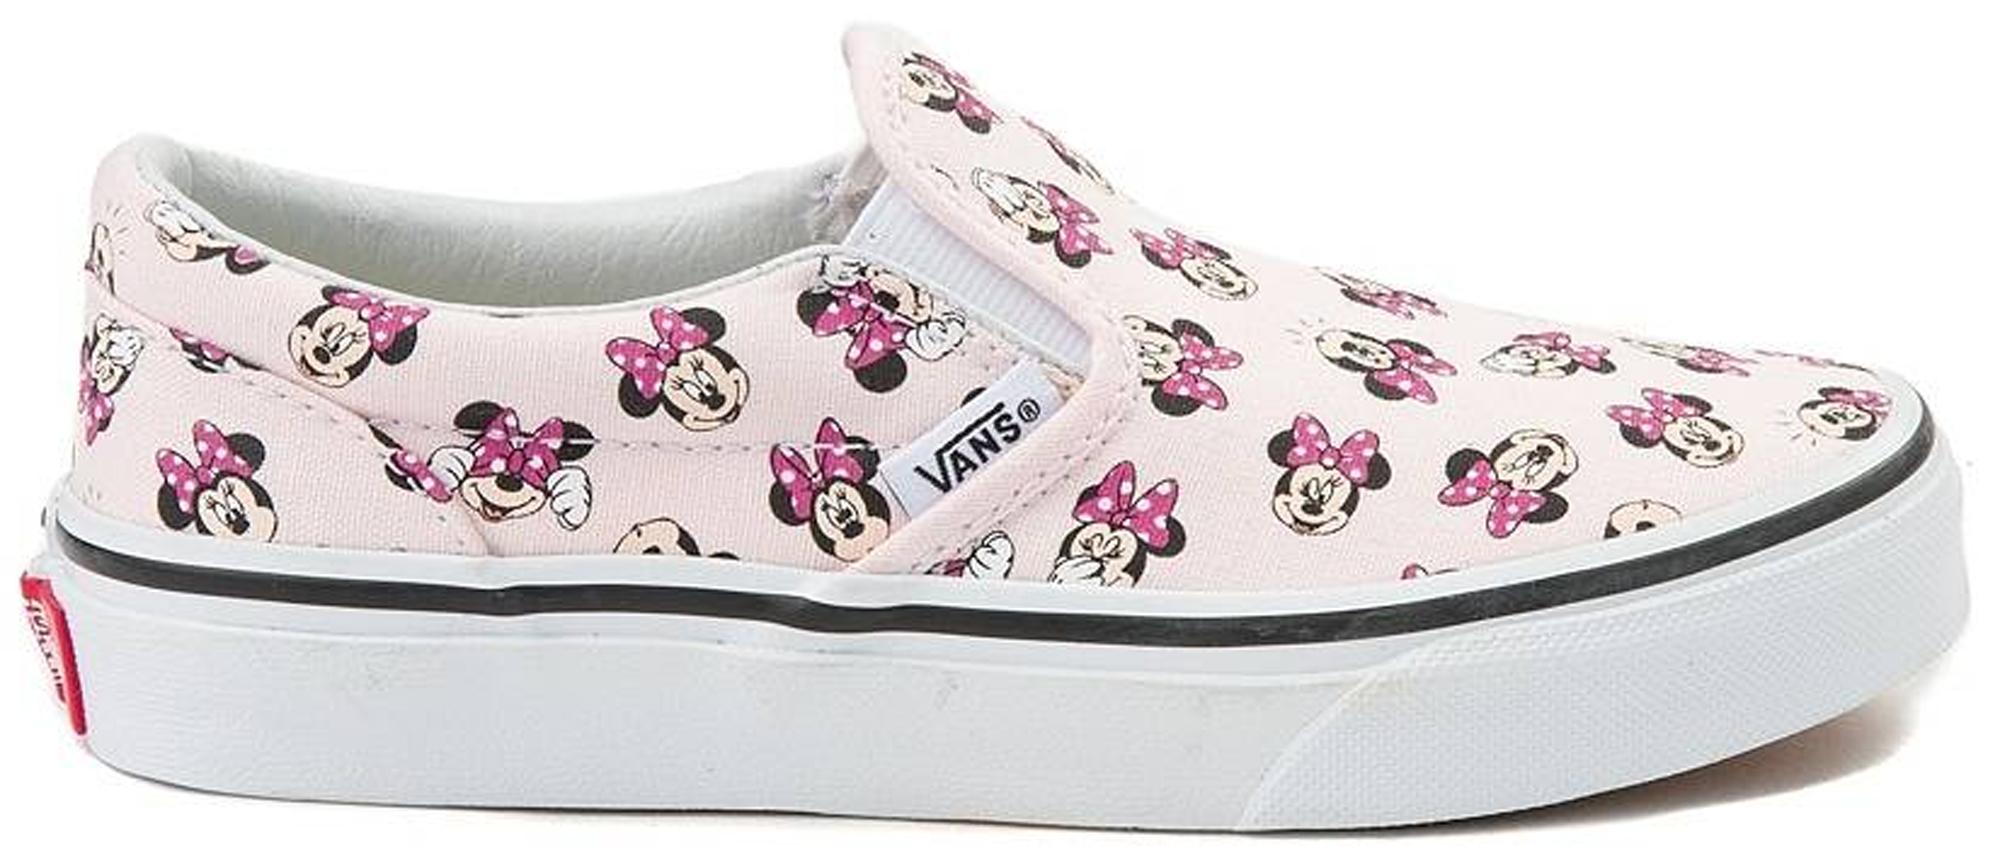 minnie mouse vans shoes